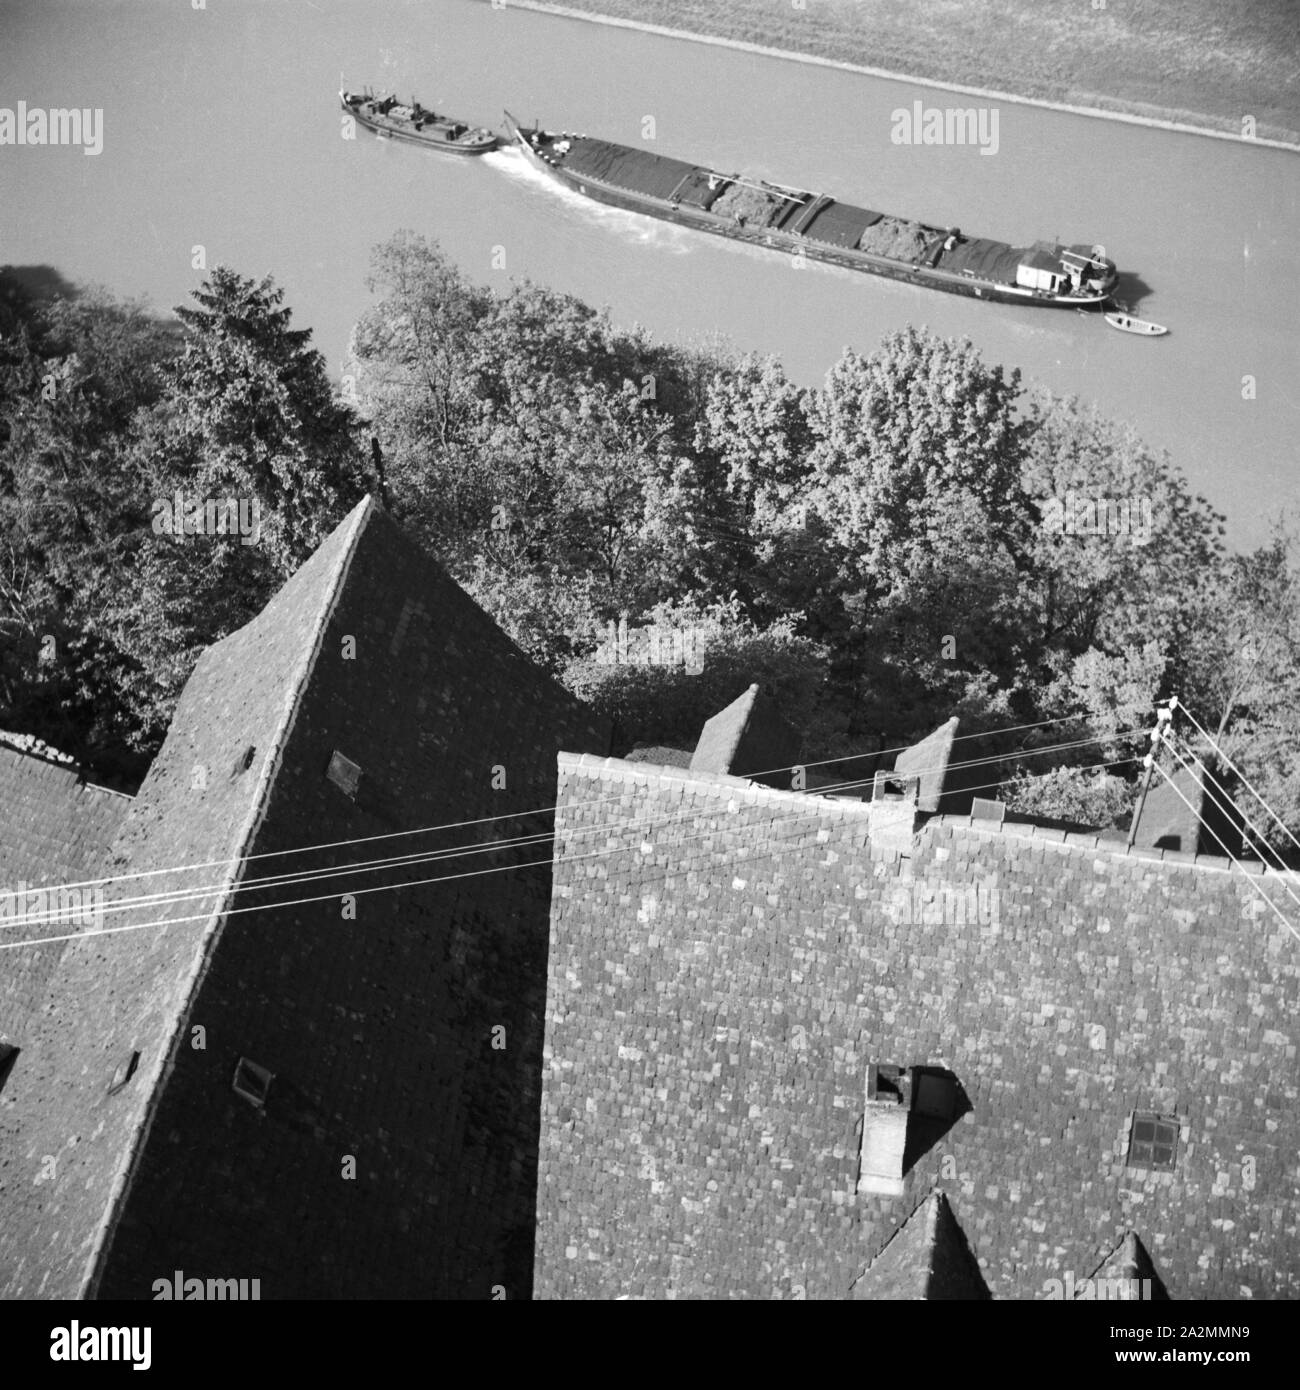 Ein Schlepper zieht auf dem Neckar an Bad Wimpfen vorbei, Germany 1930s. A freight ship on river Neckar passing the town of Bad Wimpfen, Germany 1930s. Stock Photo